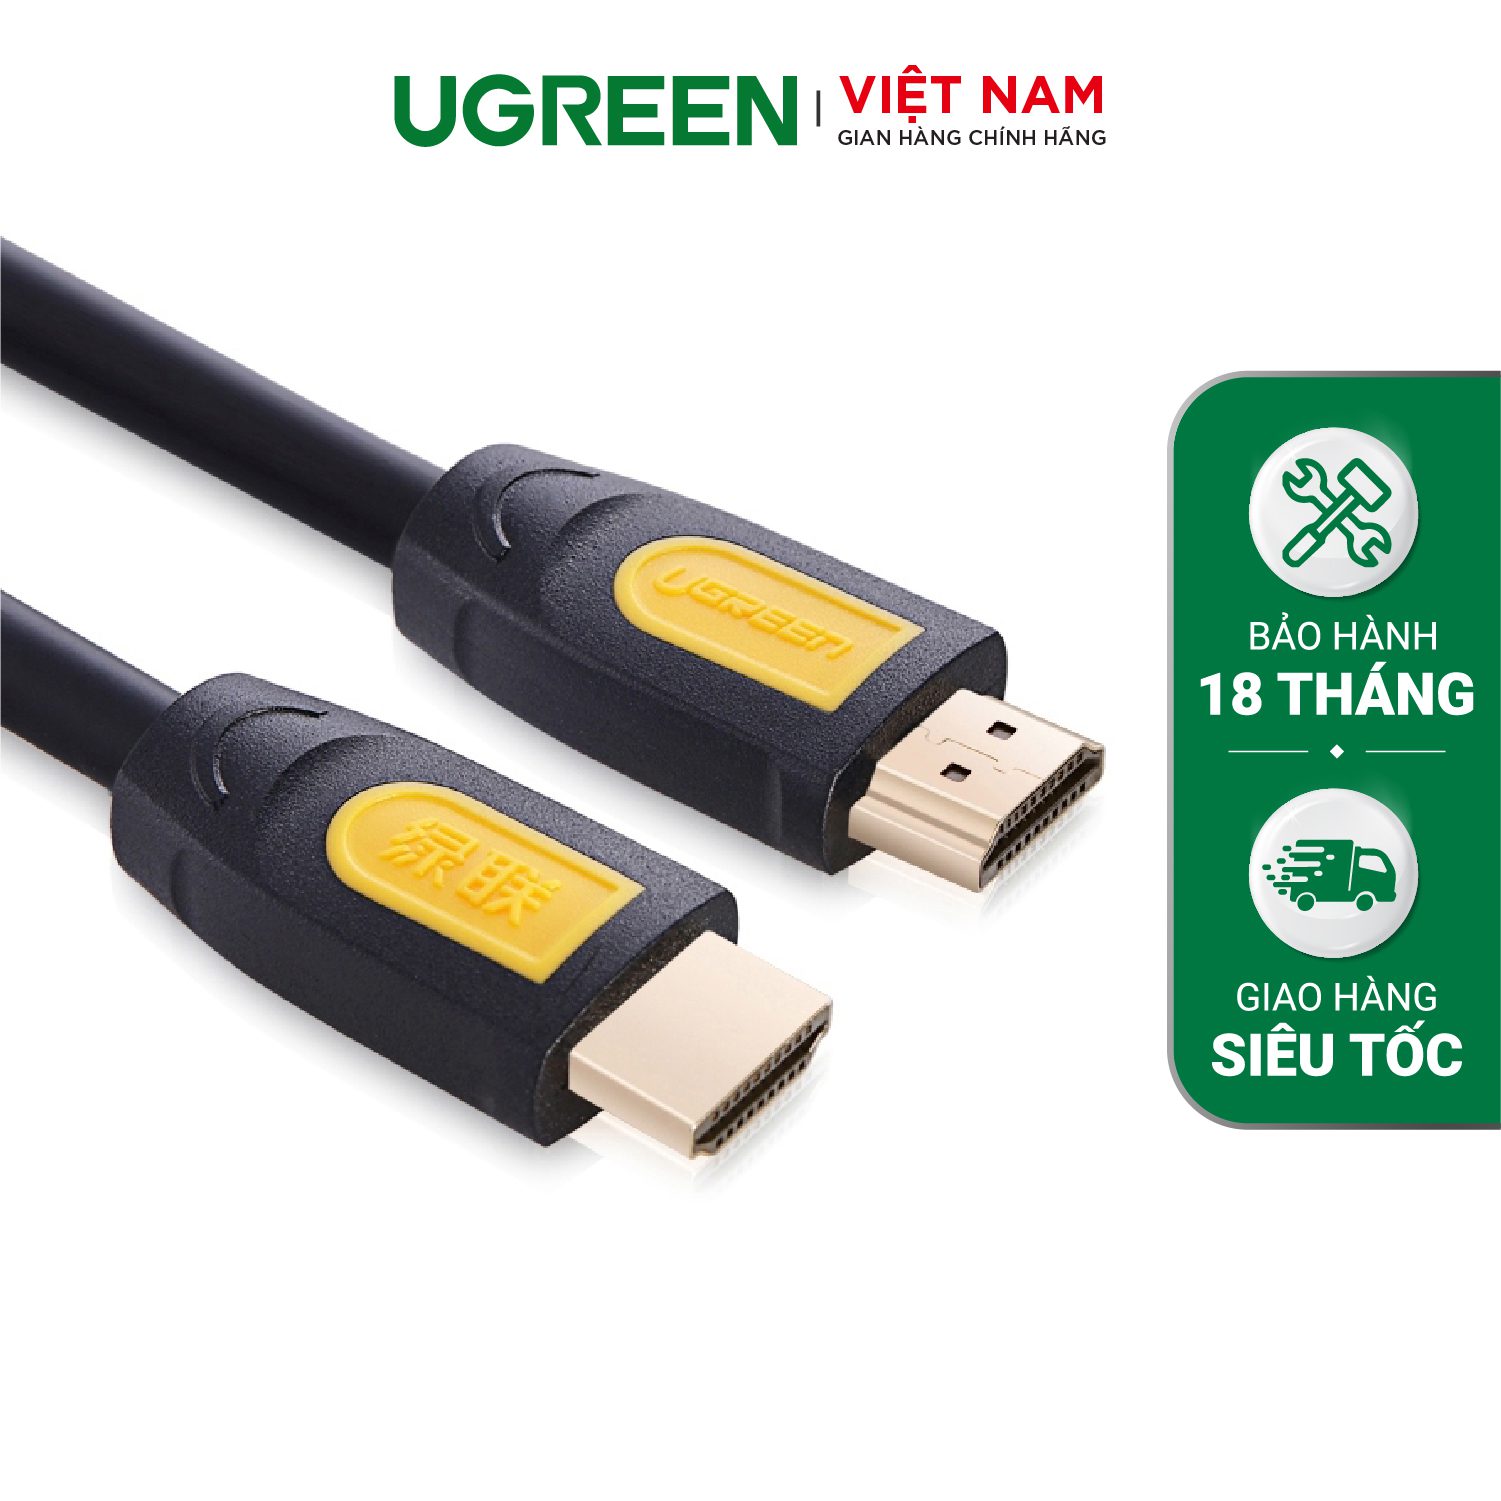 Cáp HDMI 1.4 UGREEN HD101 Hỗ trợ phân giải 1080P@30Hz - Chất liệu thuần đồng 19+1 - Vỏ bọc lưới chống nhiễu - Tương thích với SmartTV, đầu DVD, Set top box, máy chiếu, … – Ugreen Việt Nam